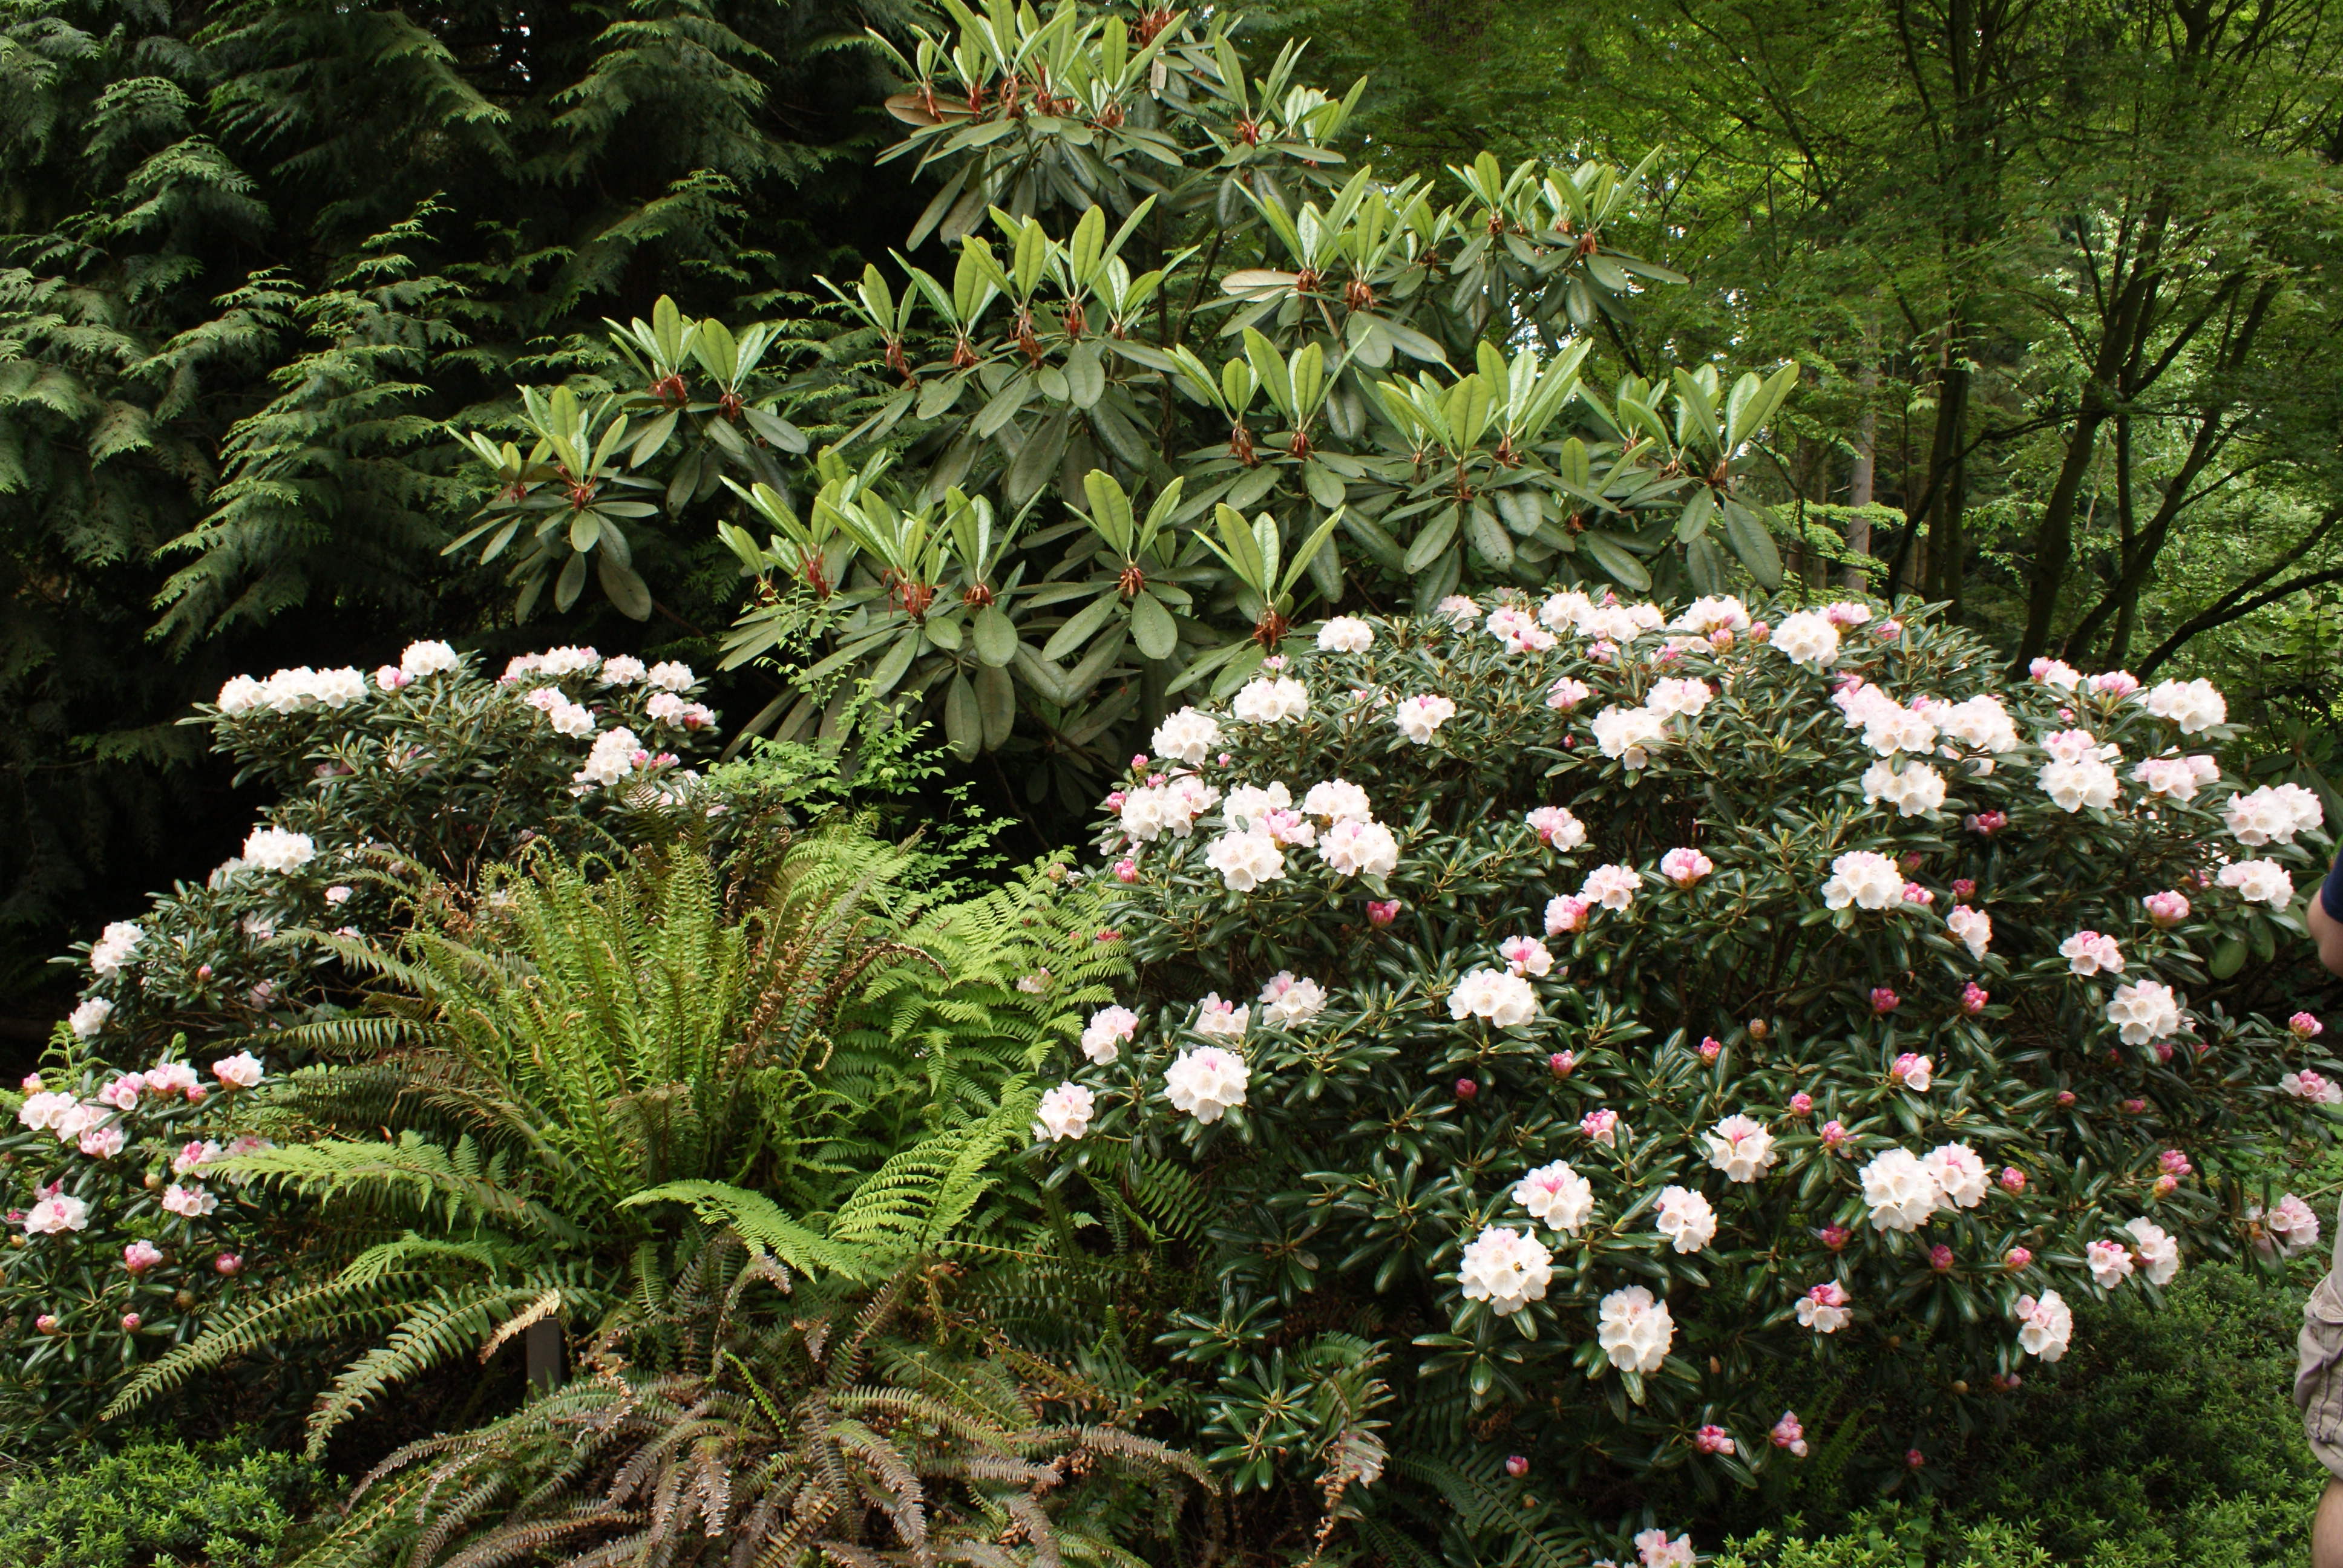 rhododendron species botanical garden, nature walks with kids, puget sound gardens